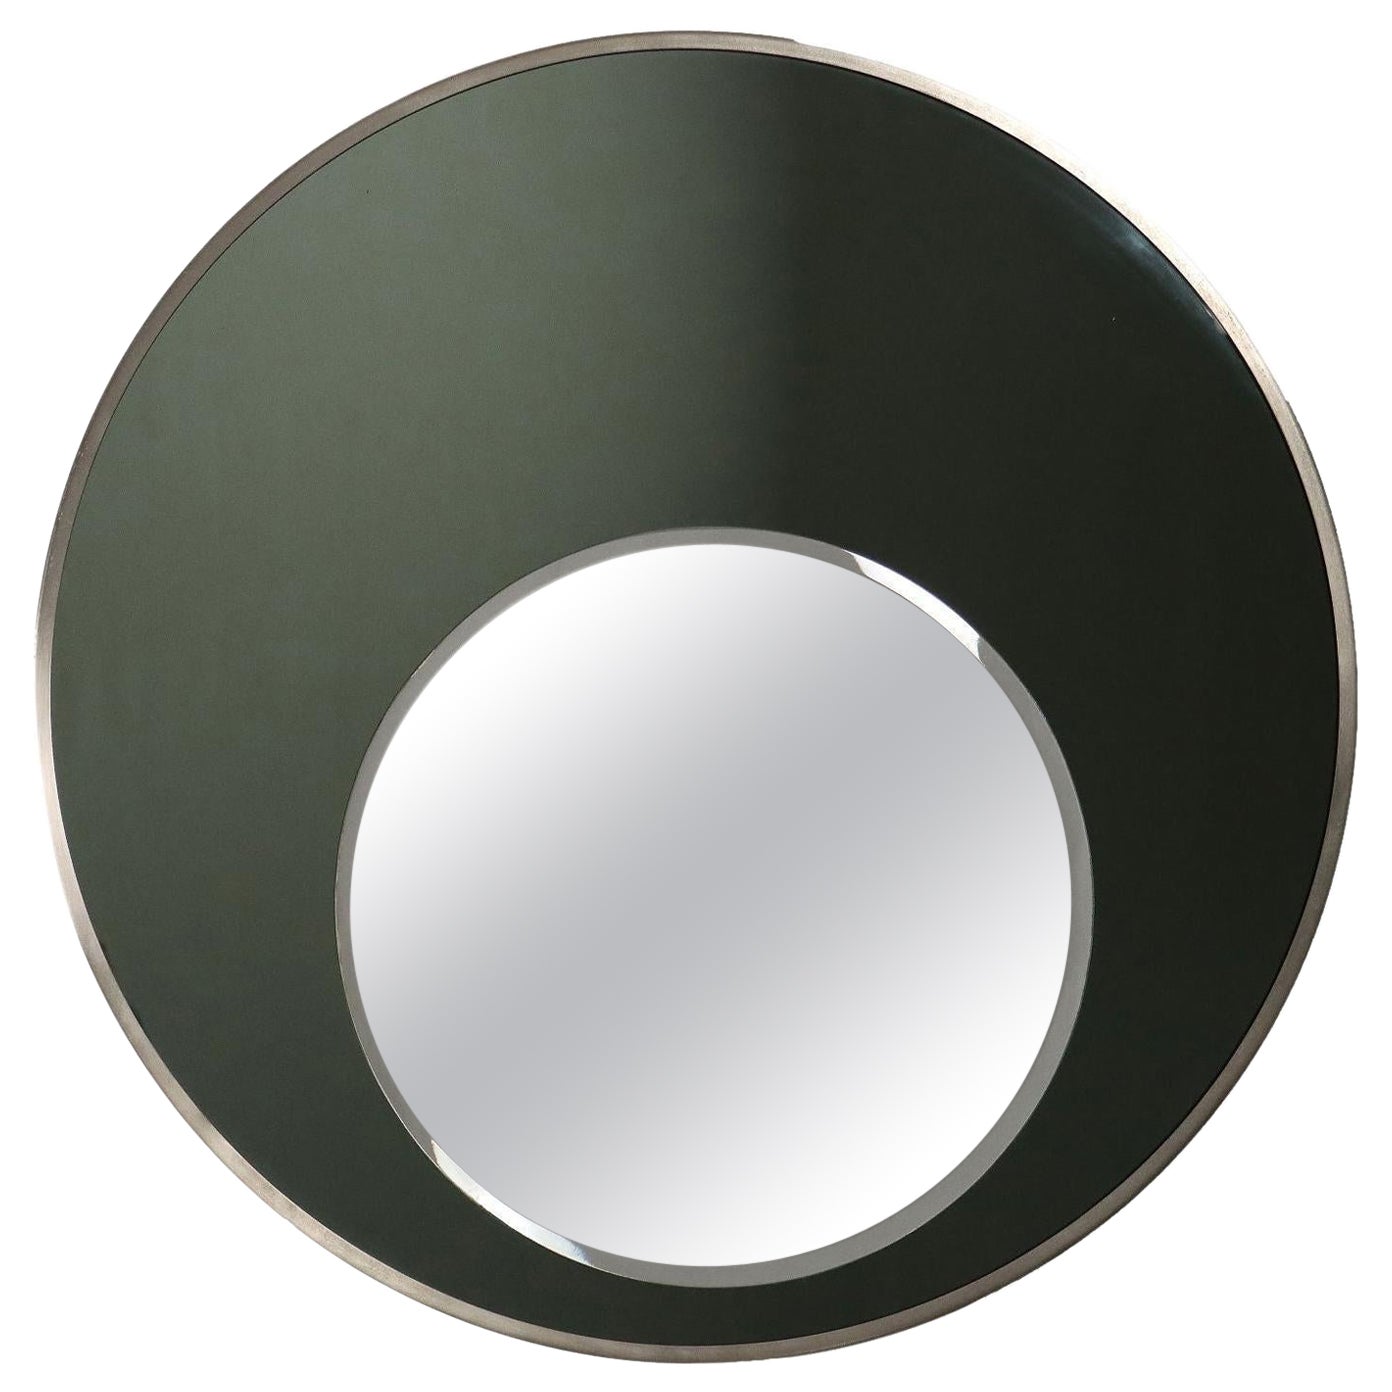 1970s round mirror